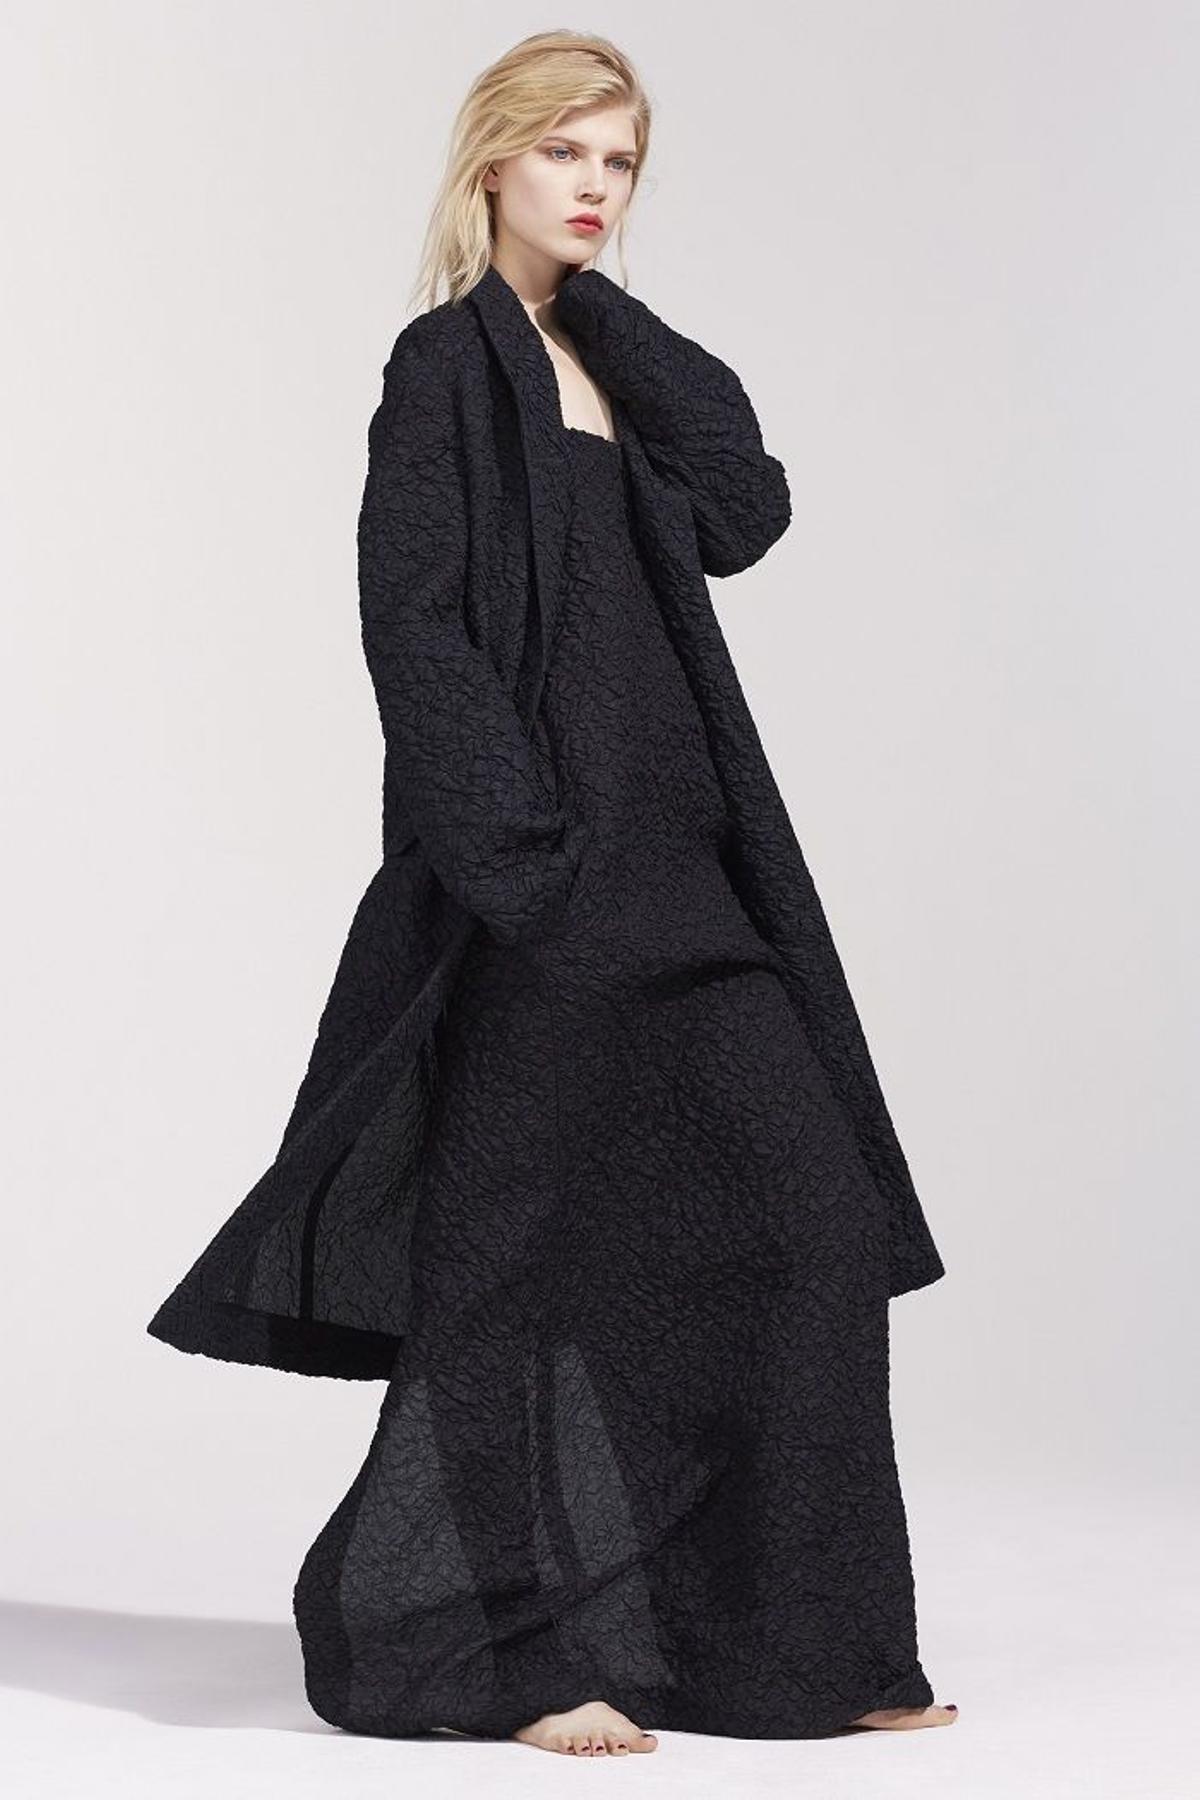 Nina Ricci colección primavera 2016, vestido negro